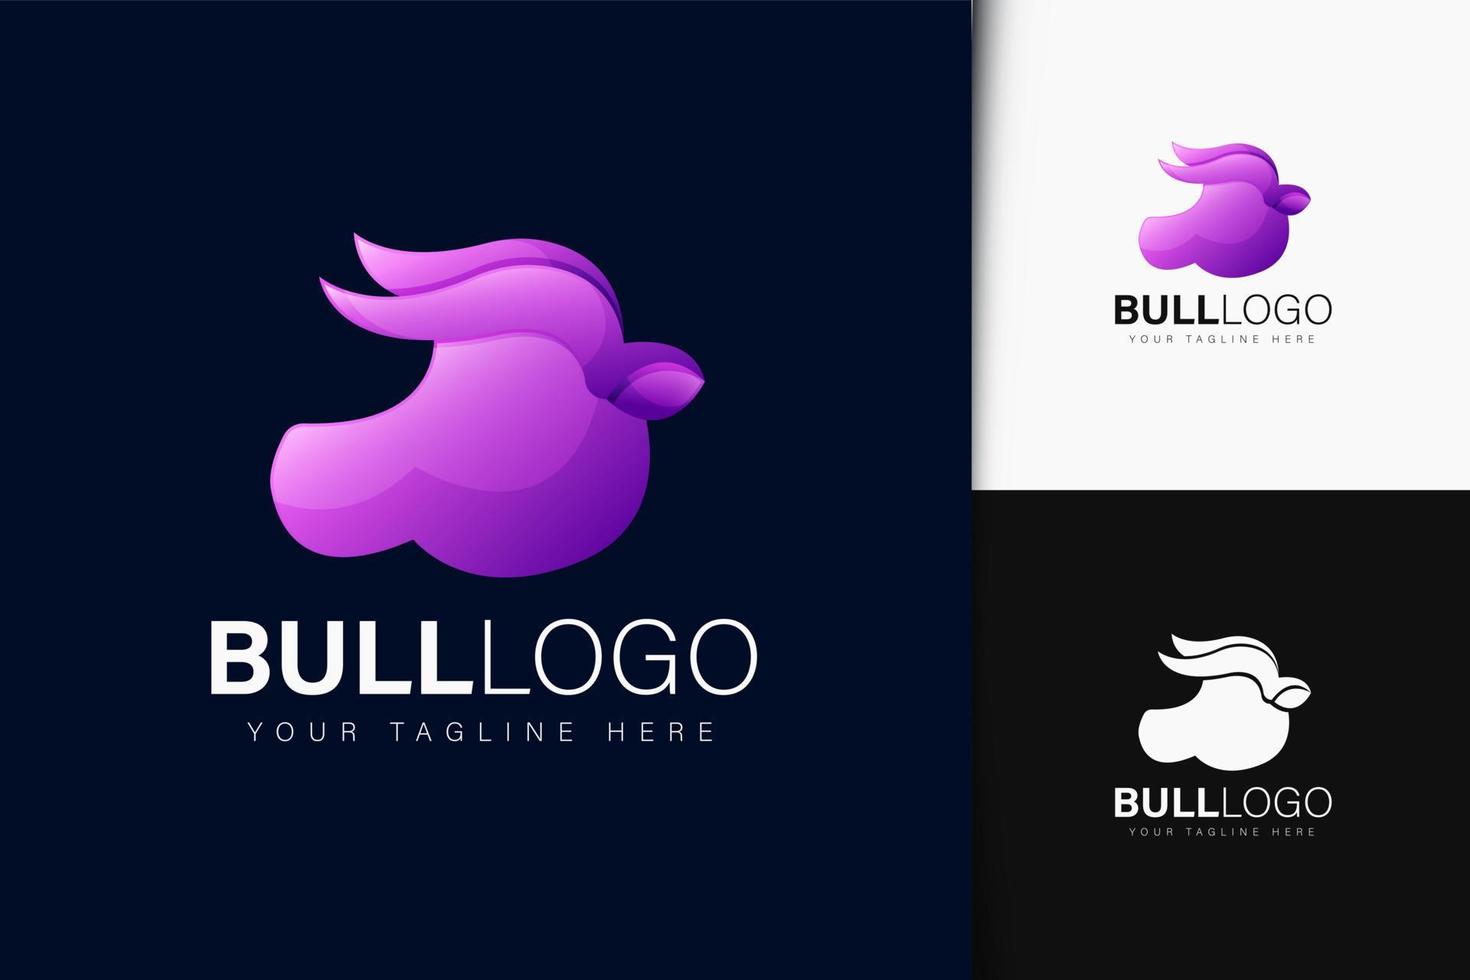 Bull Logo Design vektor